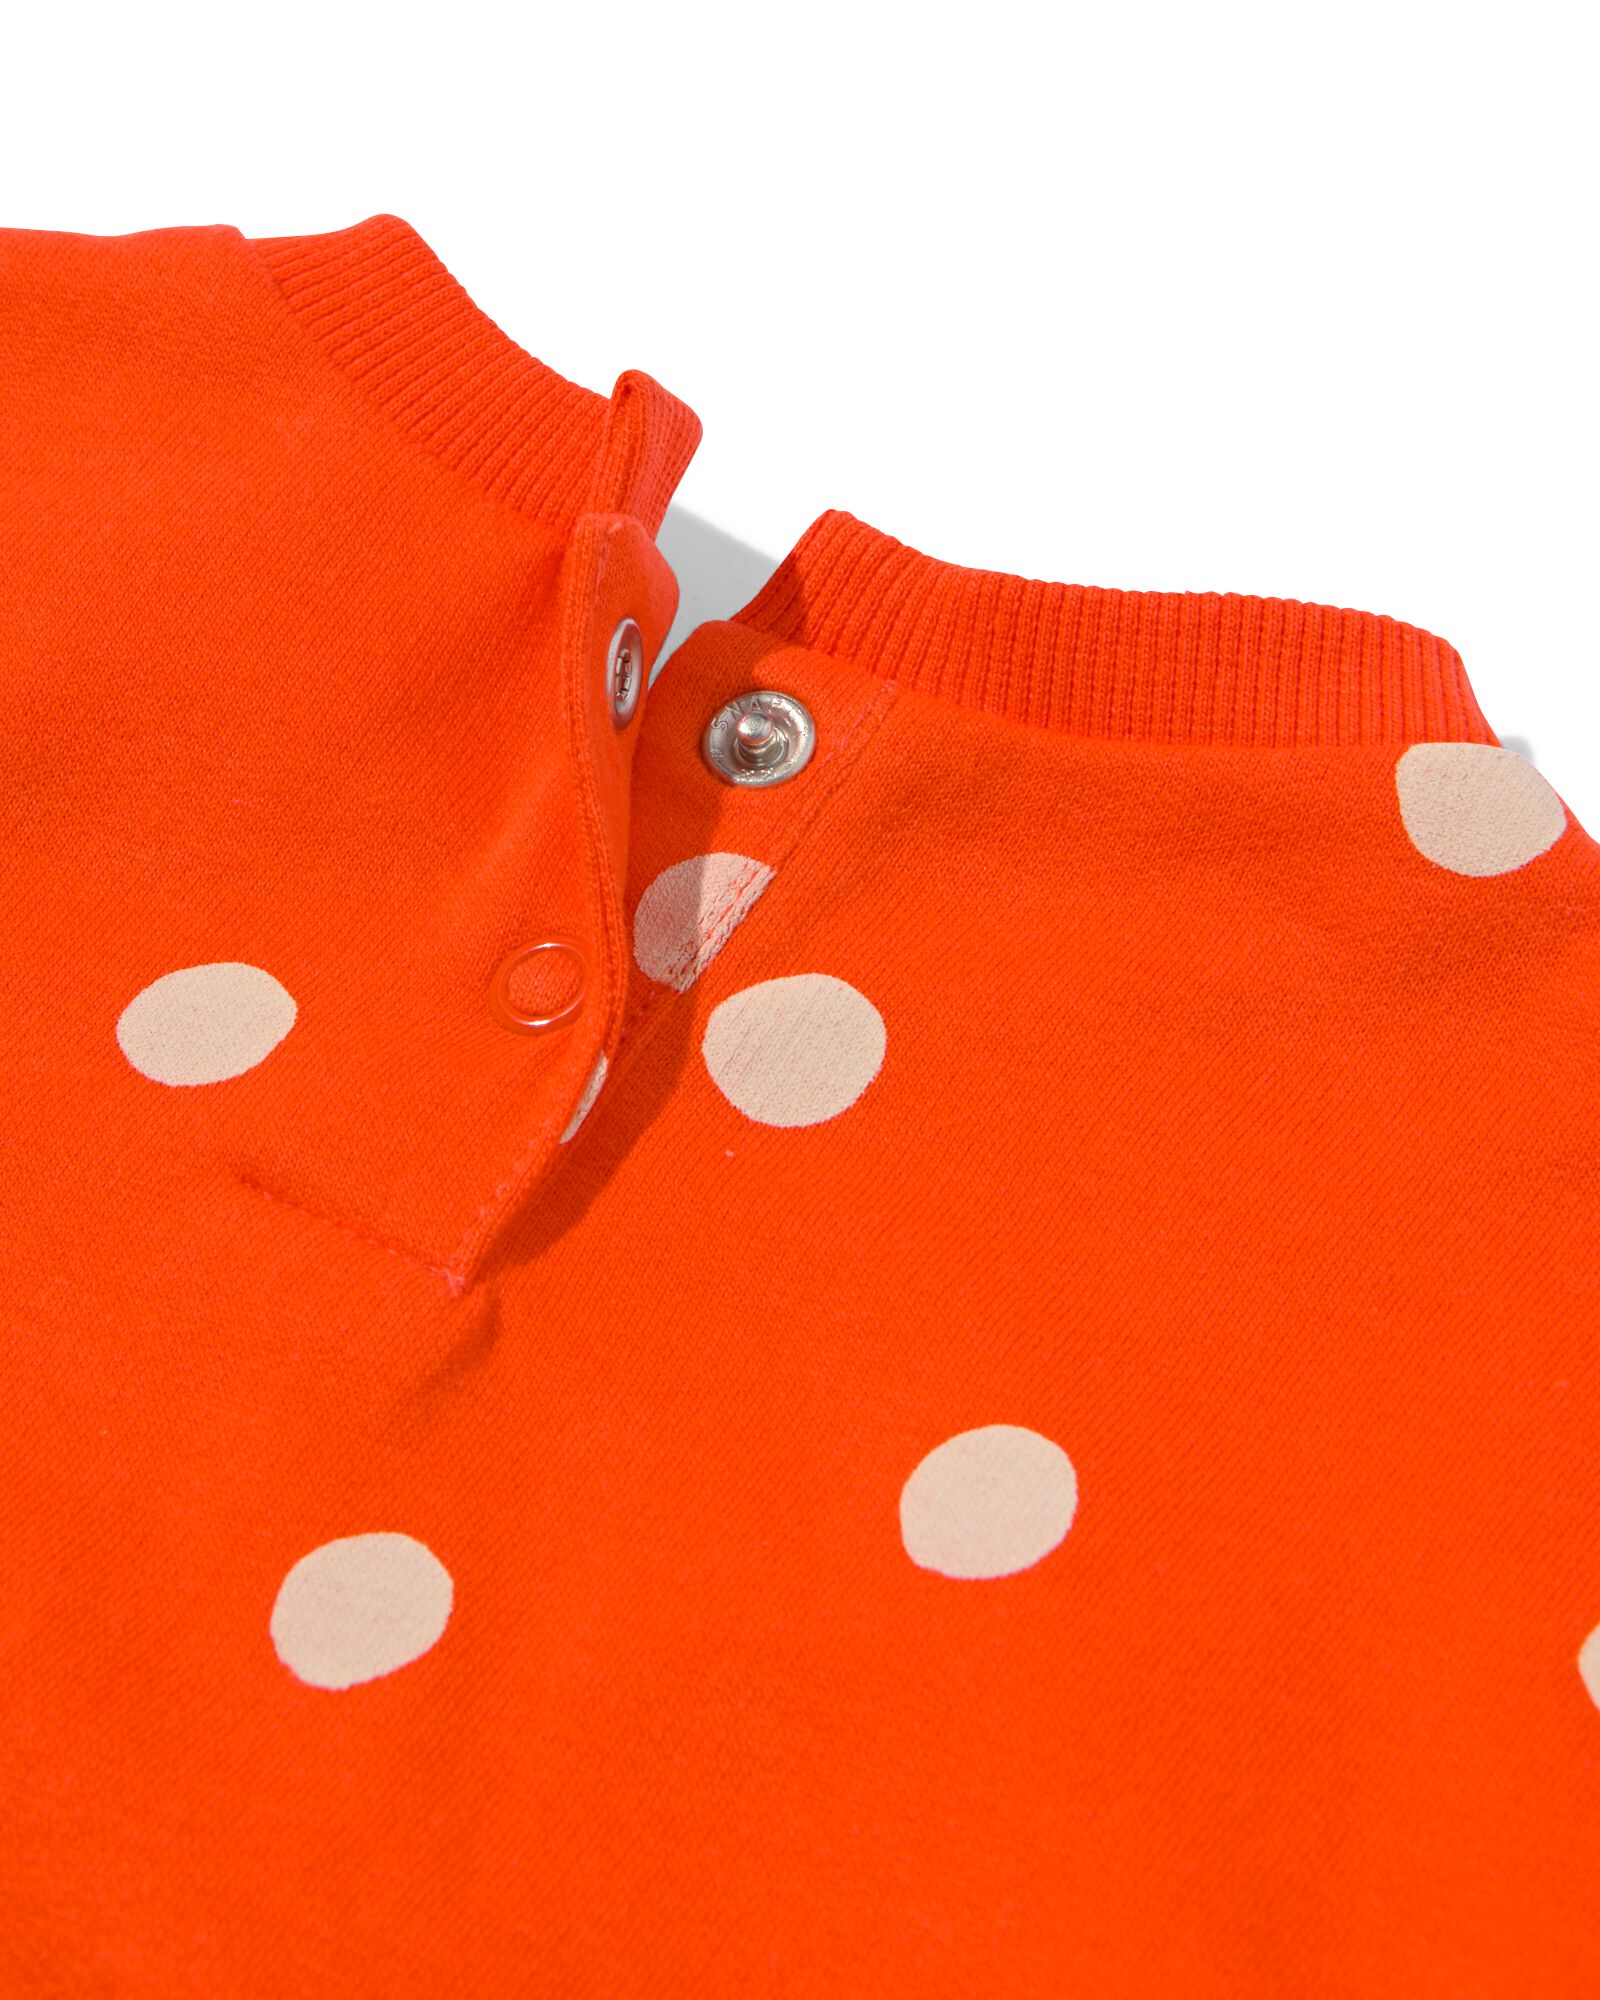 baby sweater stippen oranje oranje - 33002450ORANGE - HEMA